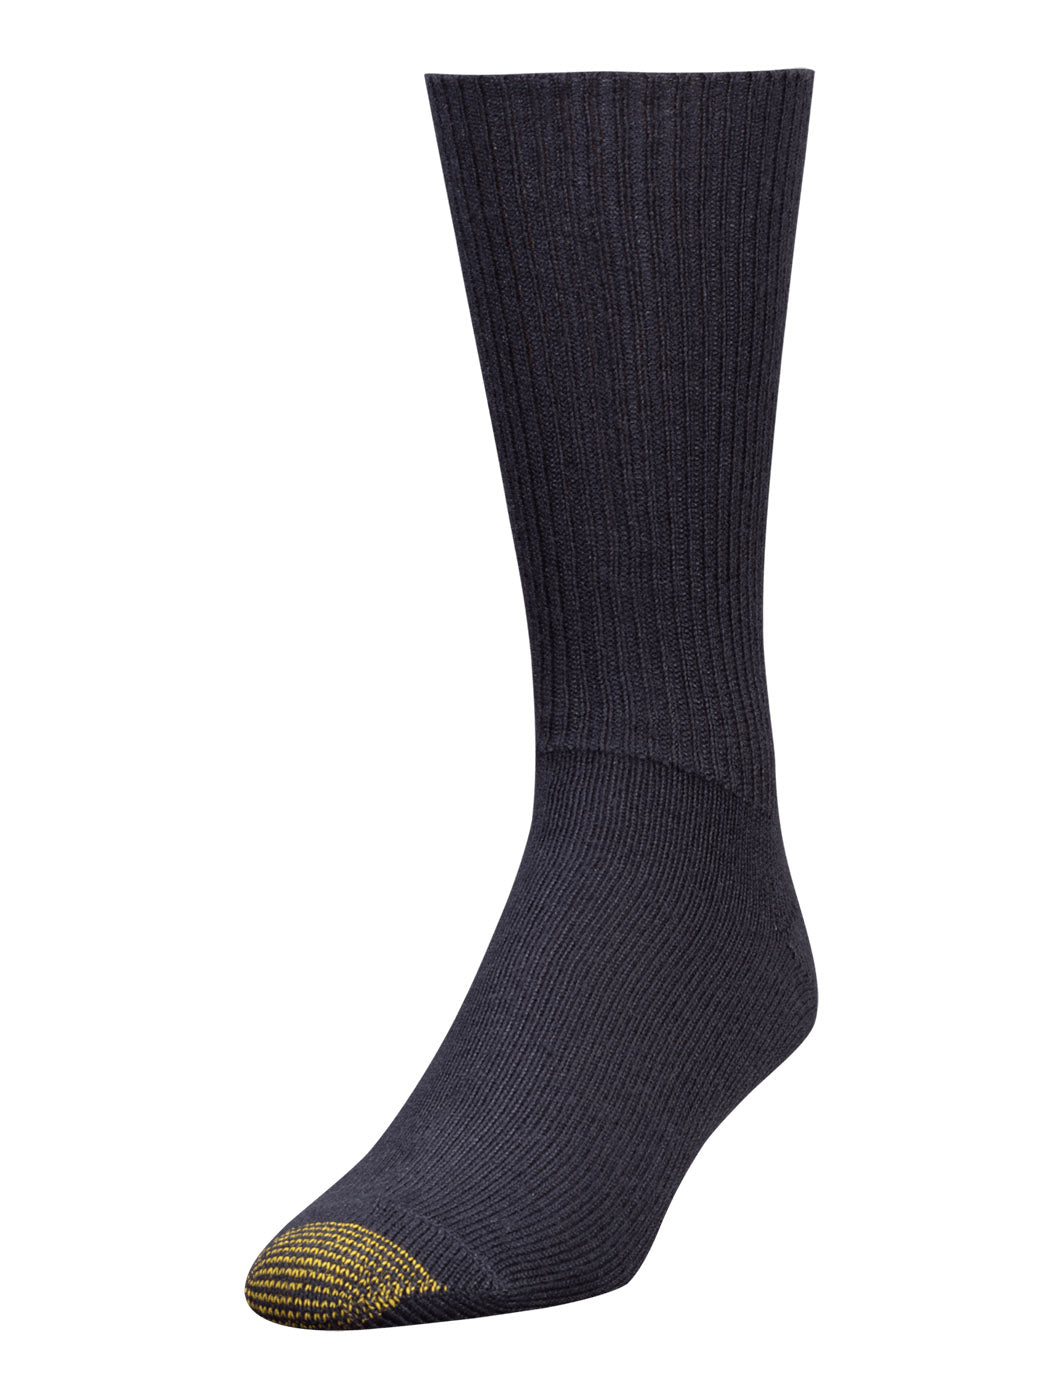 Men's Fluffies Socks